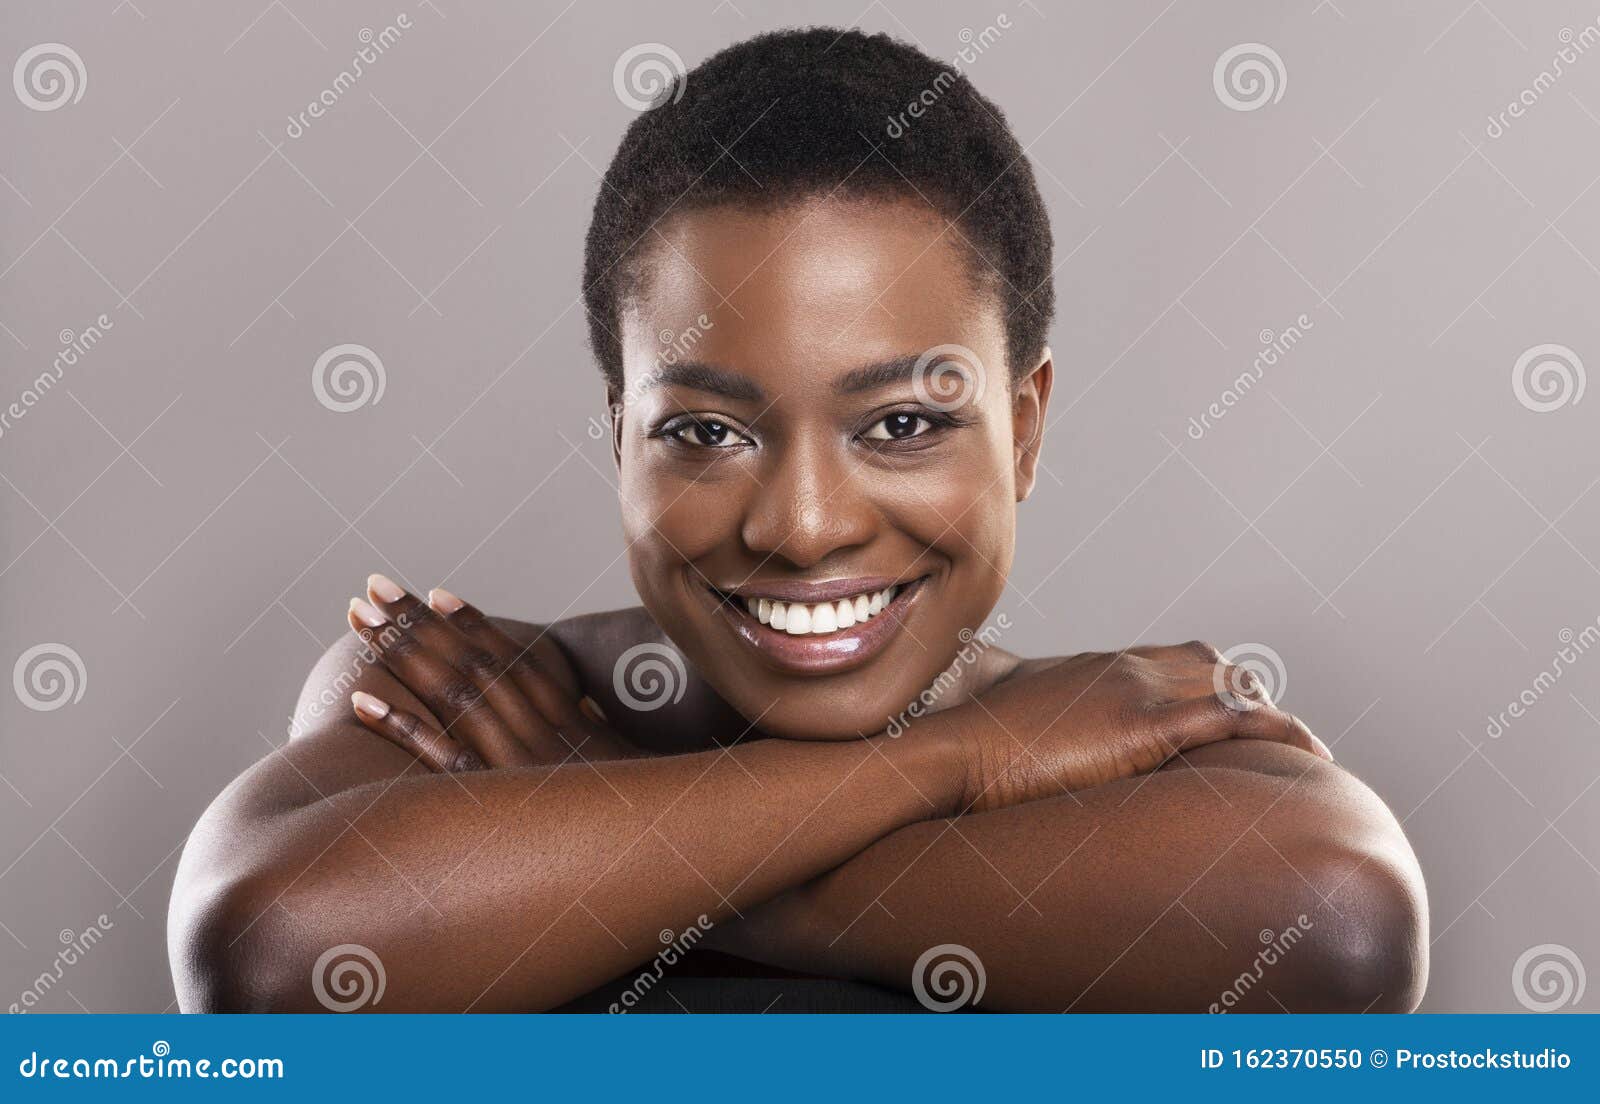 Beautiful Black Girl Nude